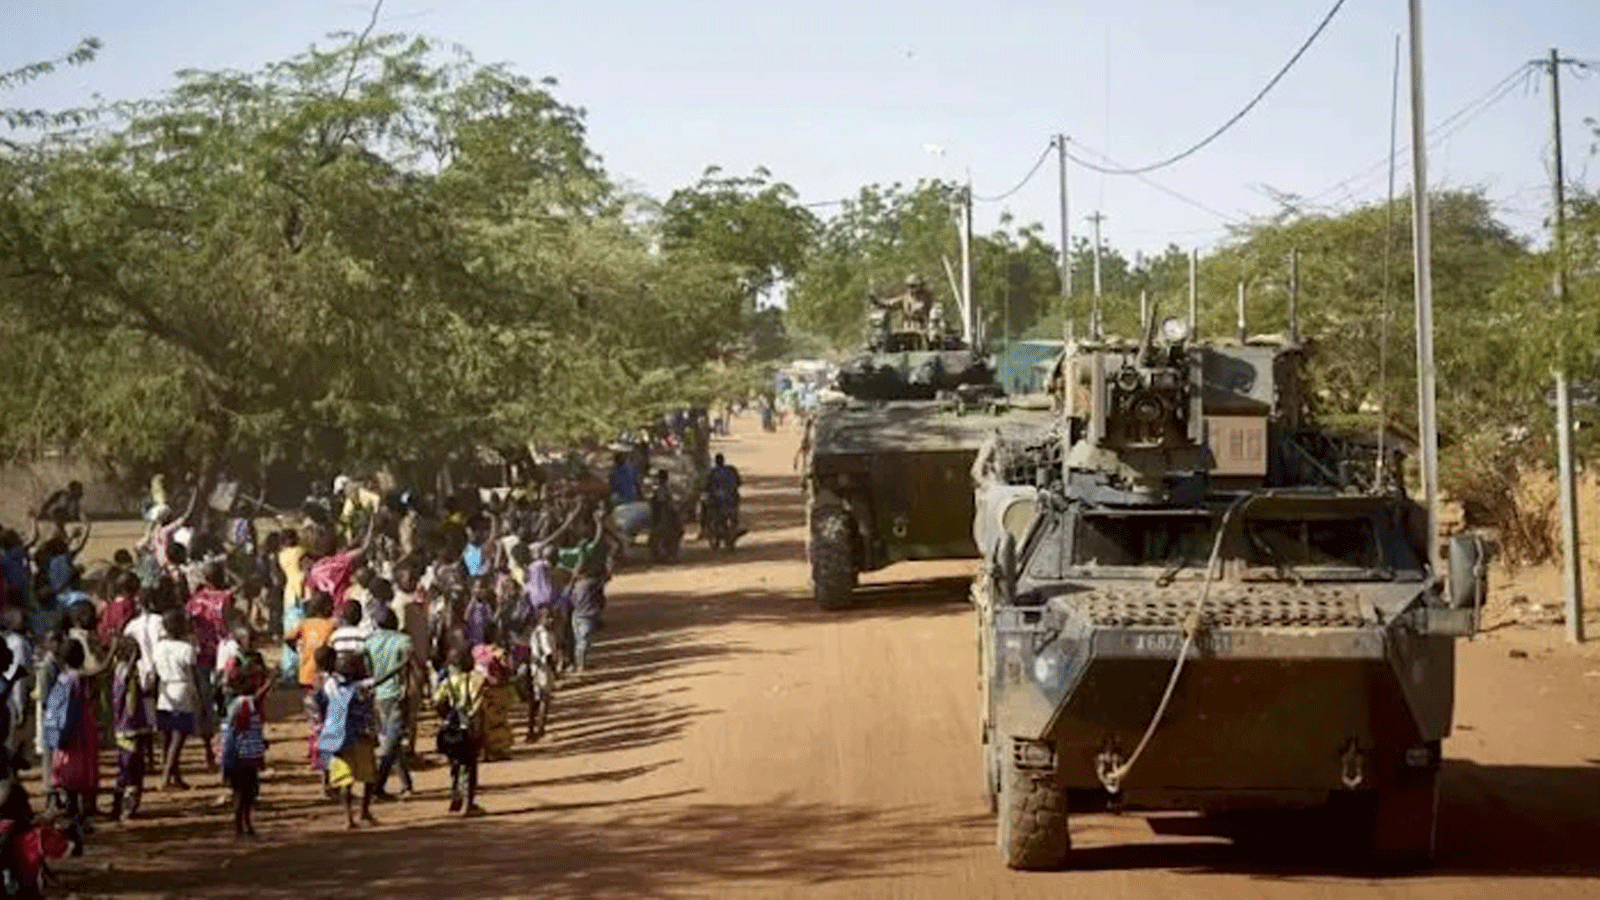  آلاف المتظاهرين يواجهون قافلة عسكرية فرنسية في عدة بلدات في بوركينا فاسو بينما كانت تمر عبر البلاد لتصل إلى النيجر من ساحل العاج